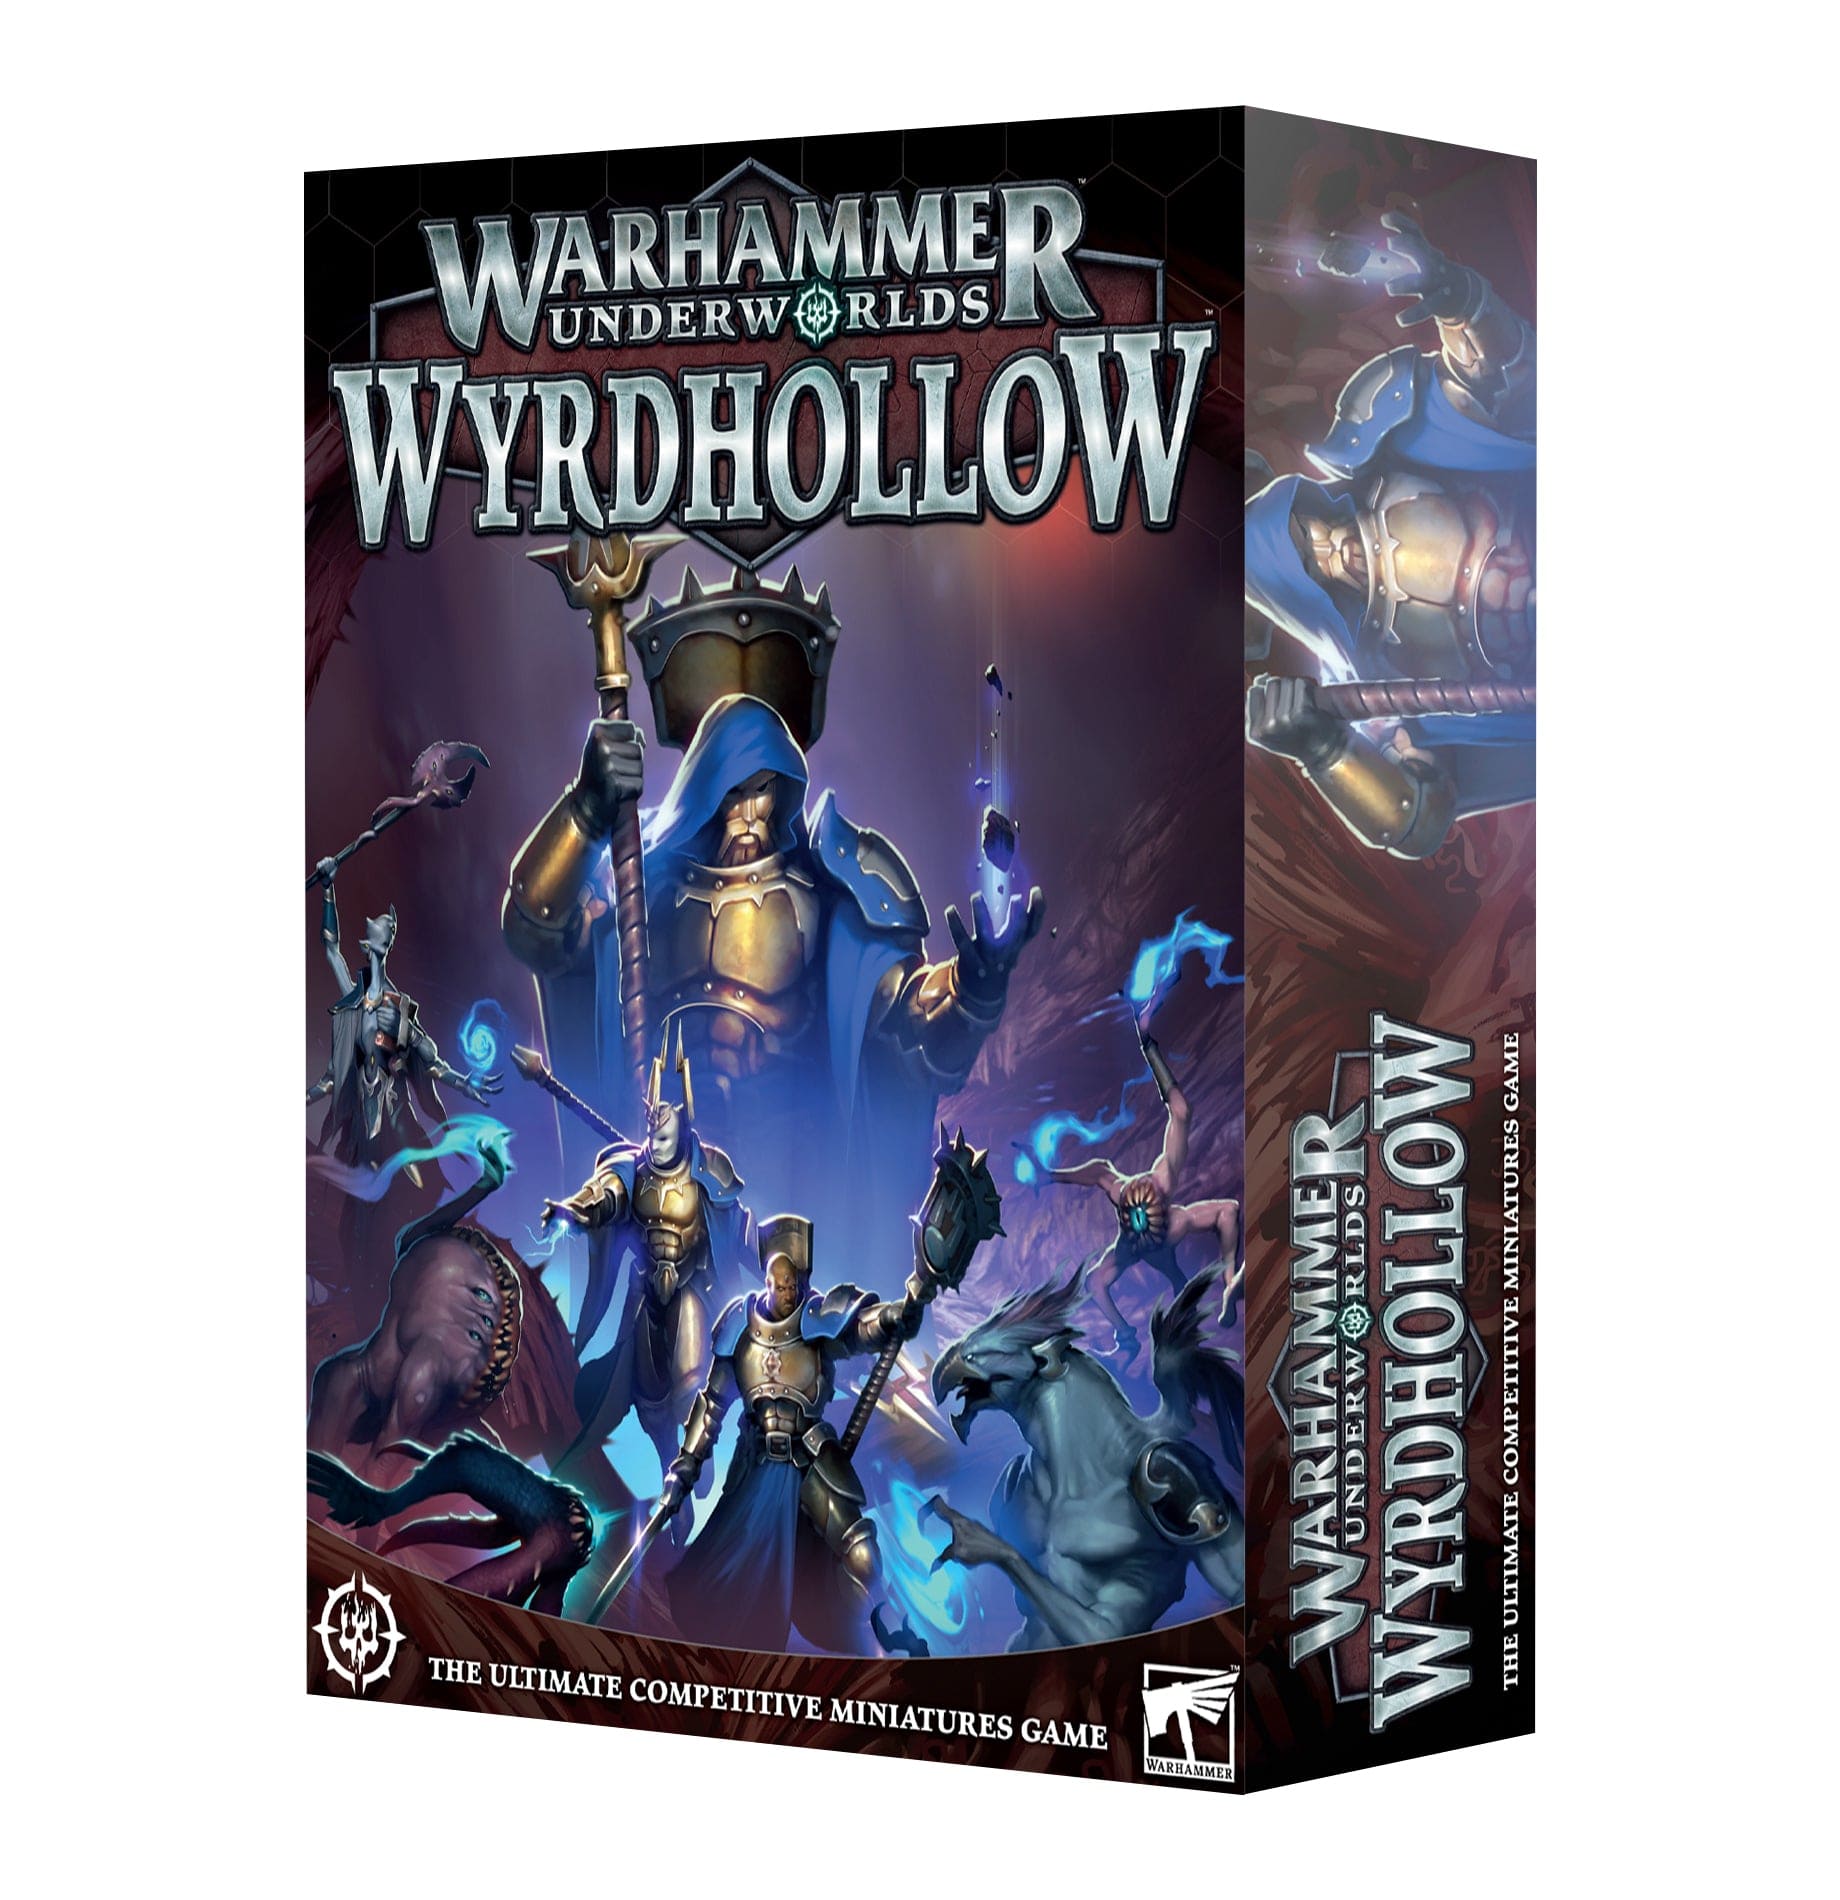 Warhammer Underworlds: Starter Set by Games Workshop